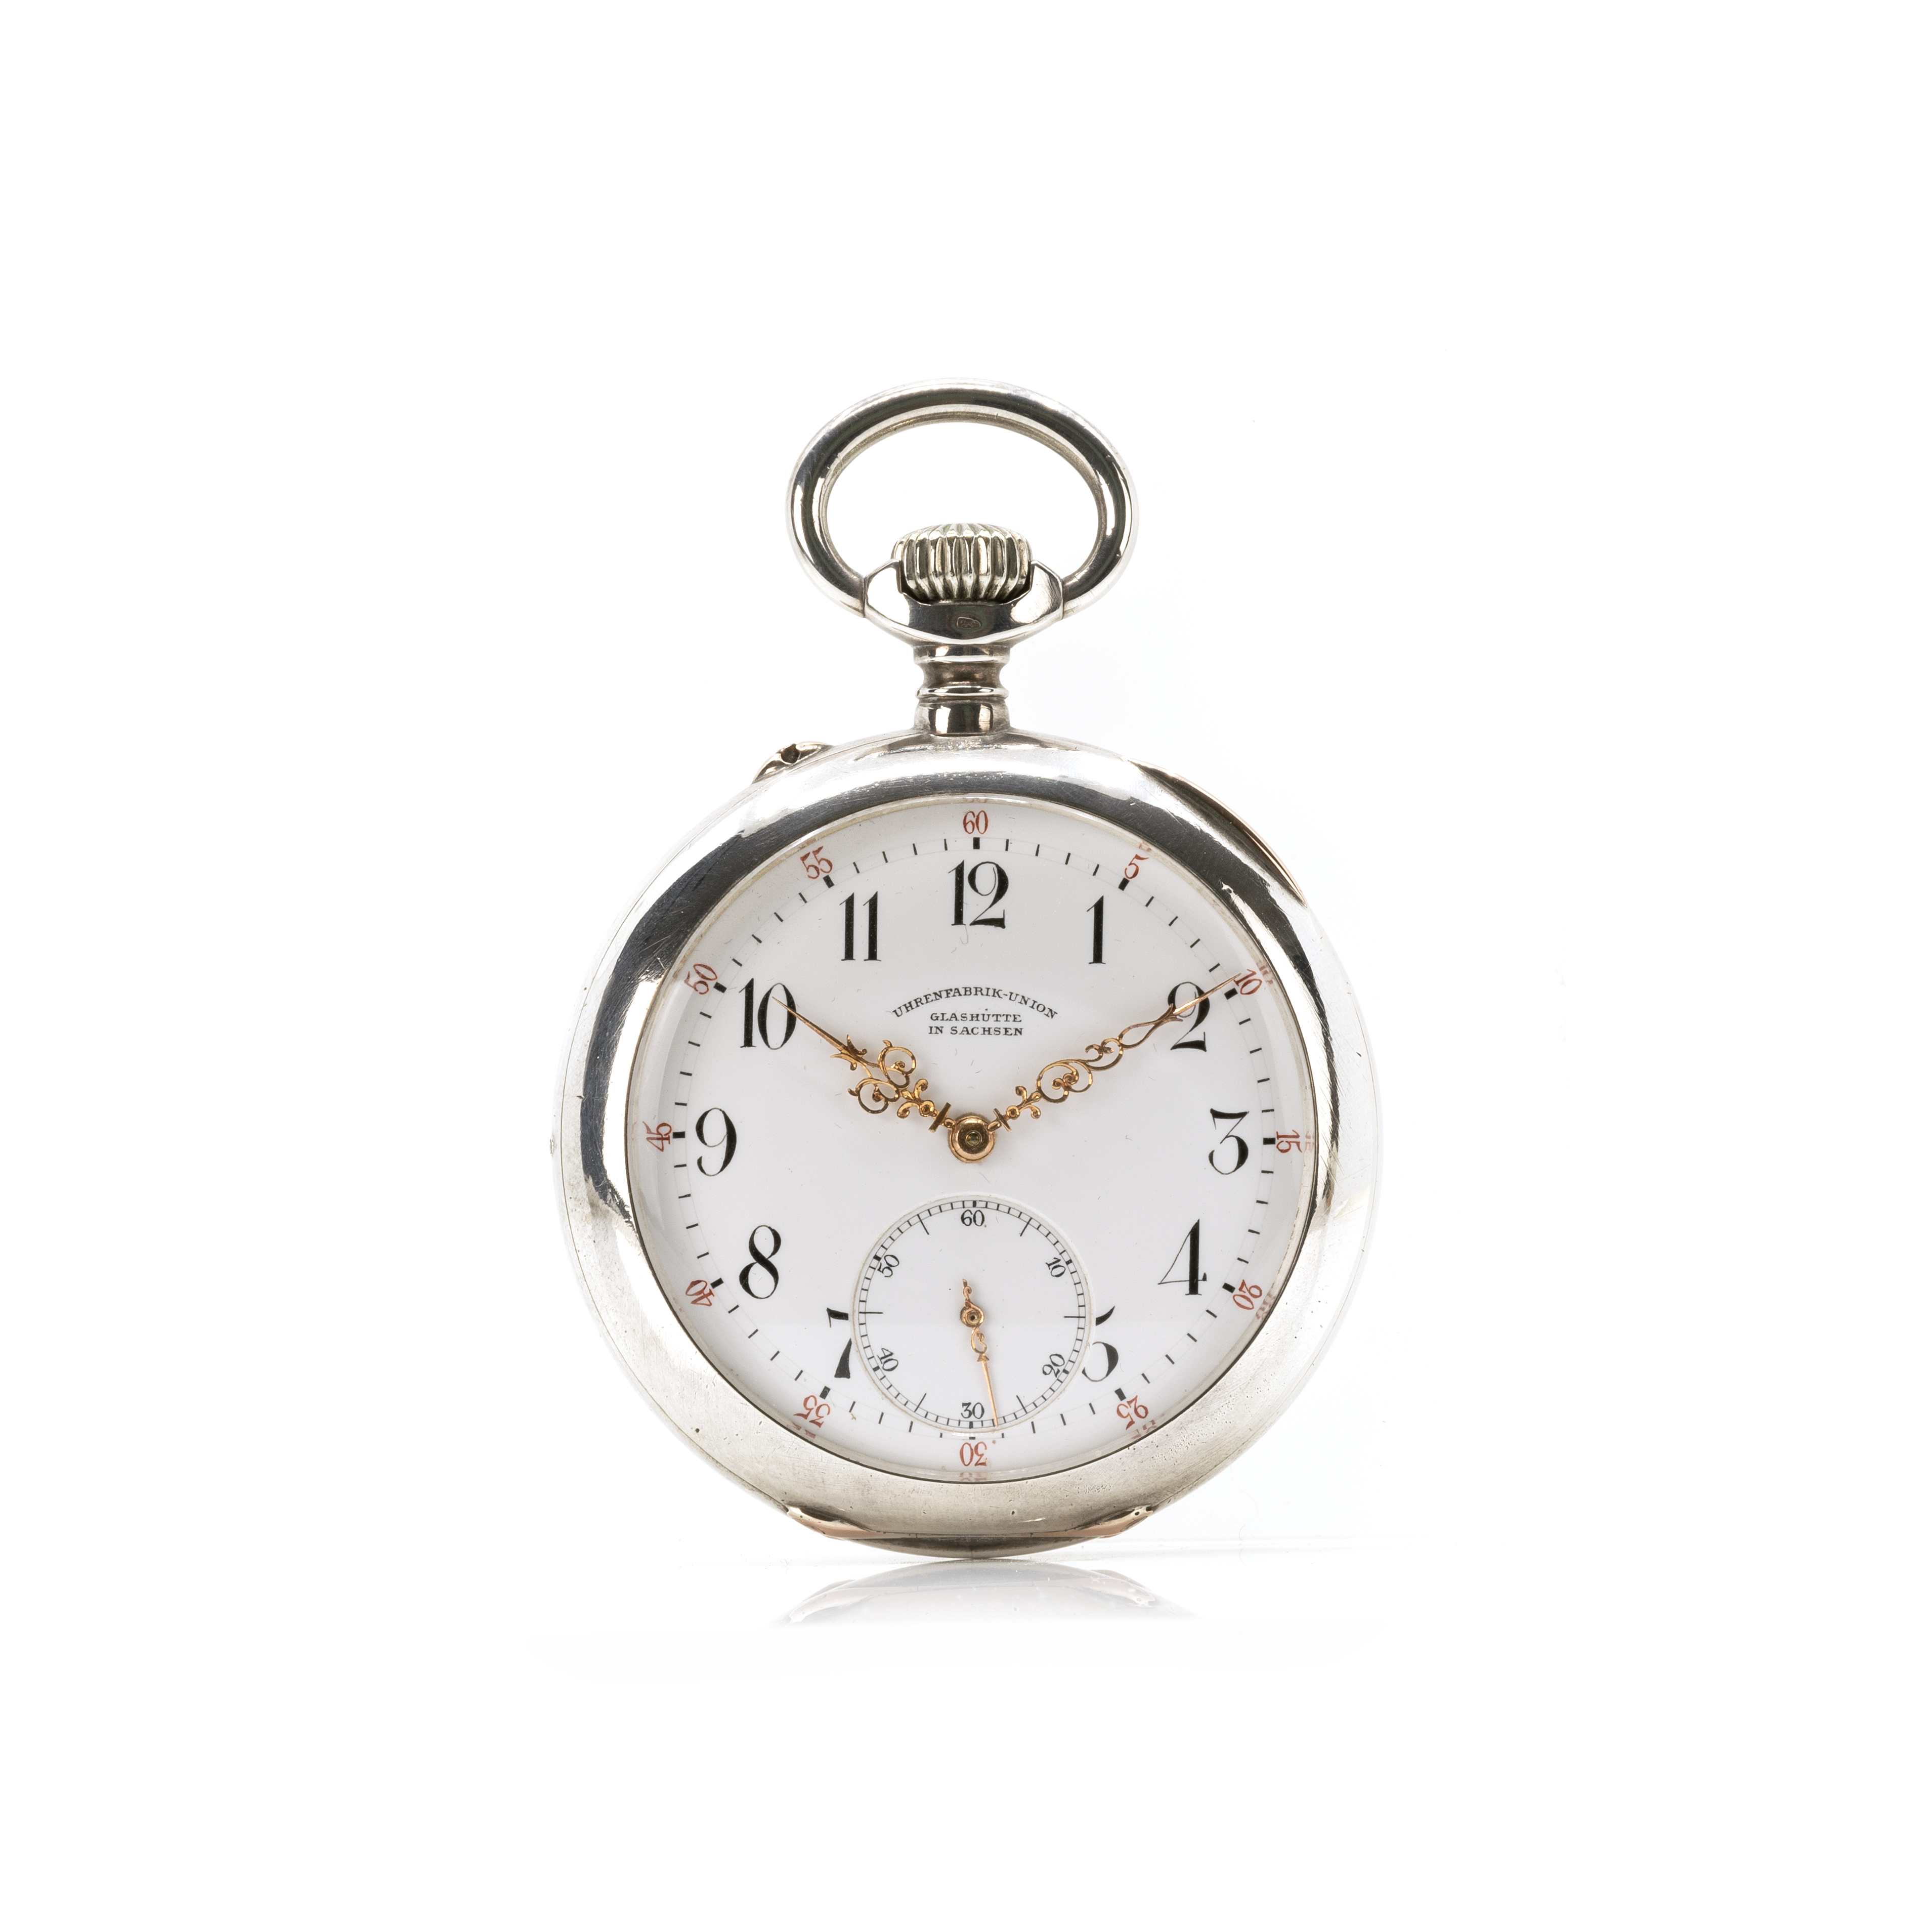 Union Glashütte Taschenuhr Lépine mit Uhrenkette